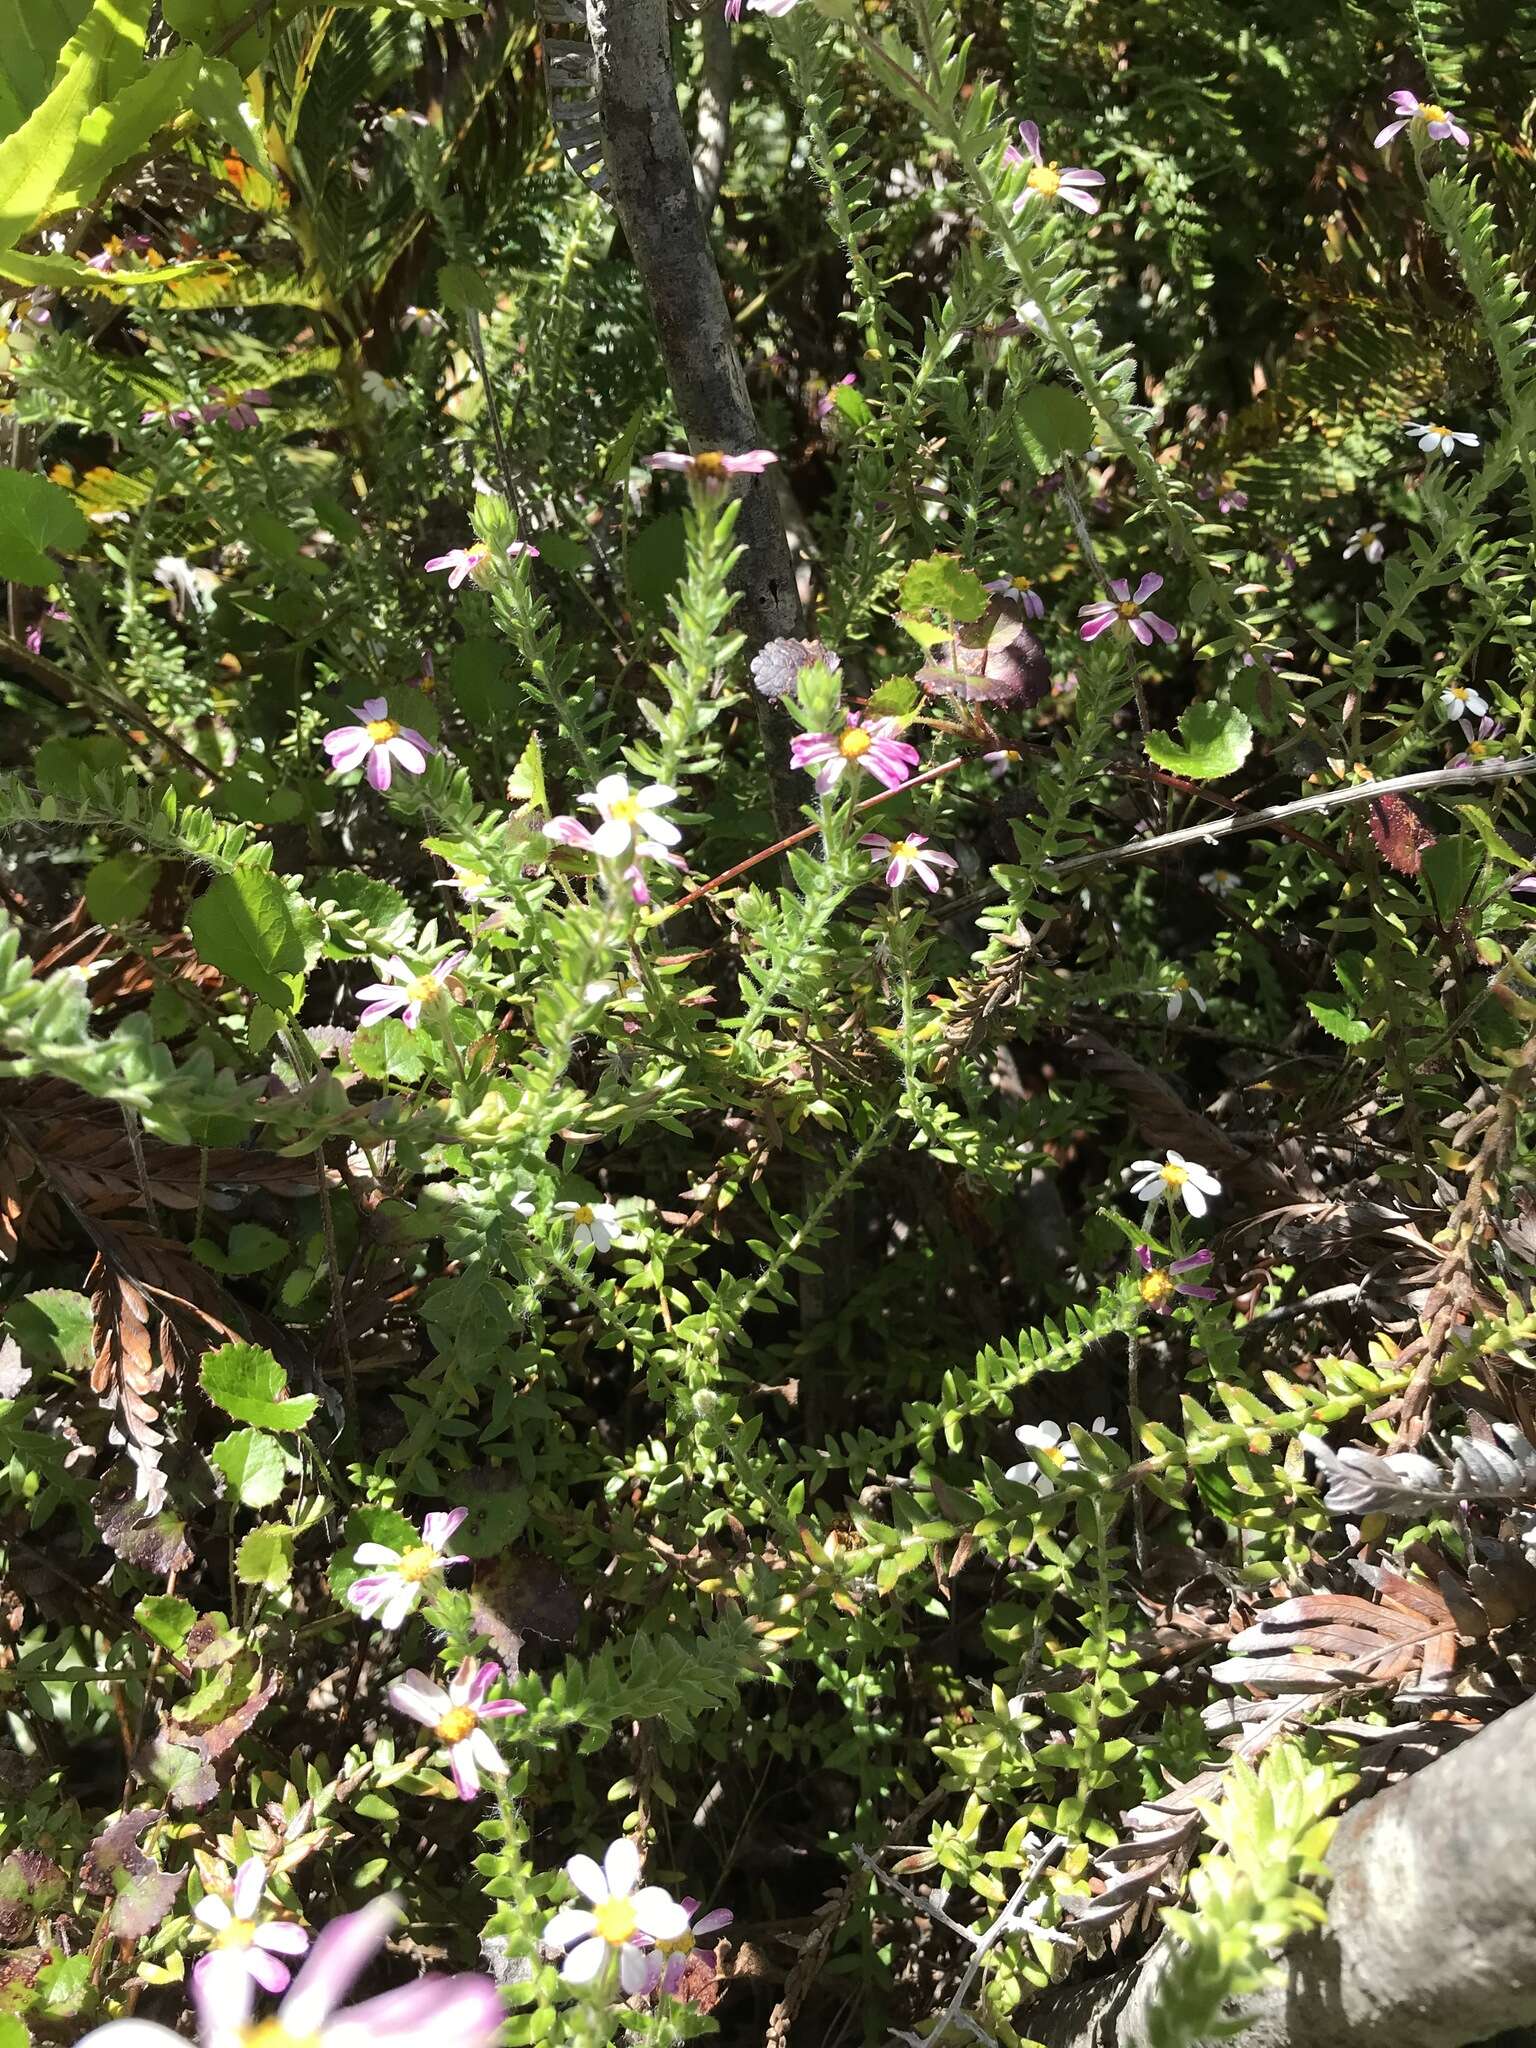 Image of Thaminophyllum latifolium P. Bond